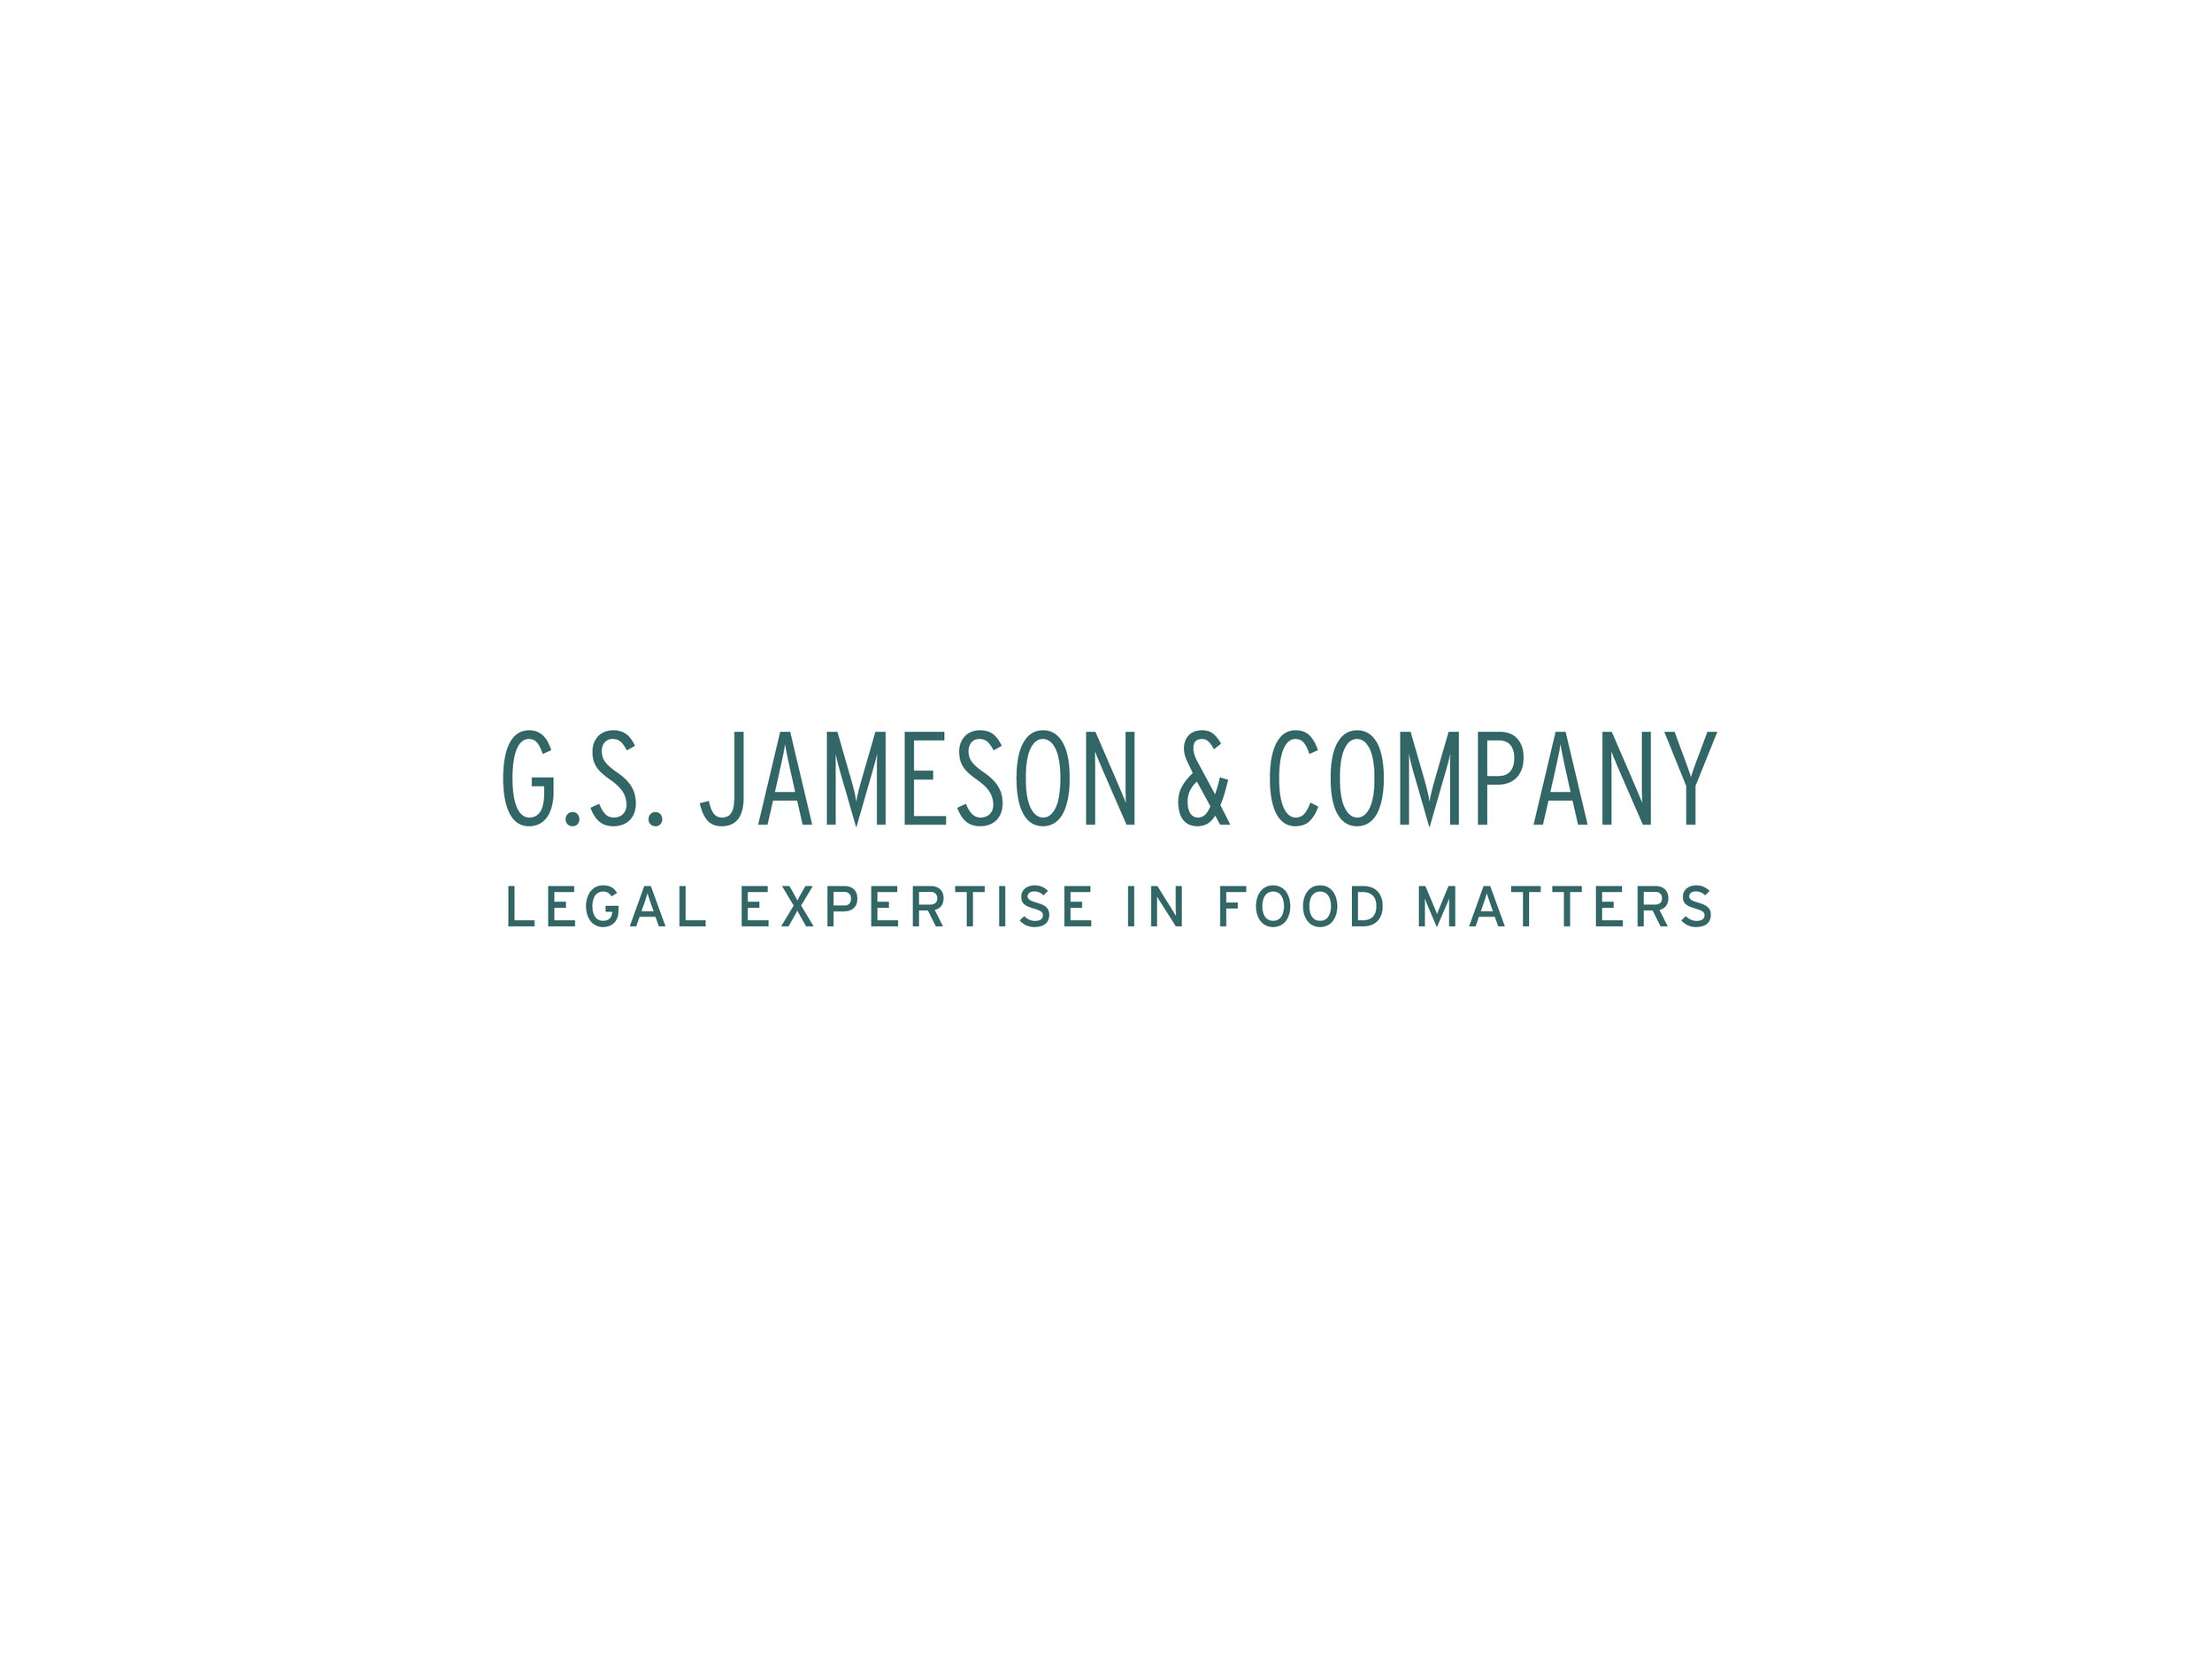 GSJ_logo-01.jpg